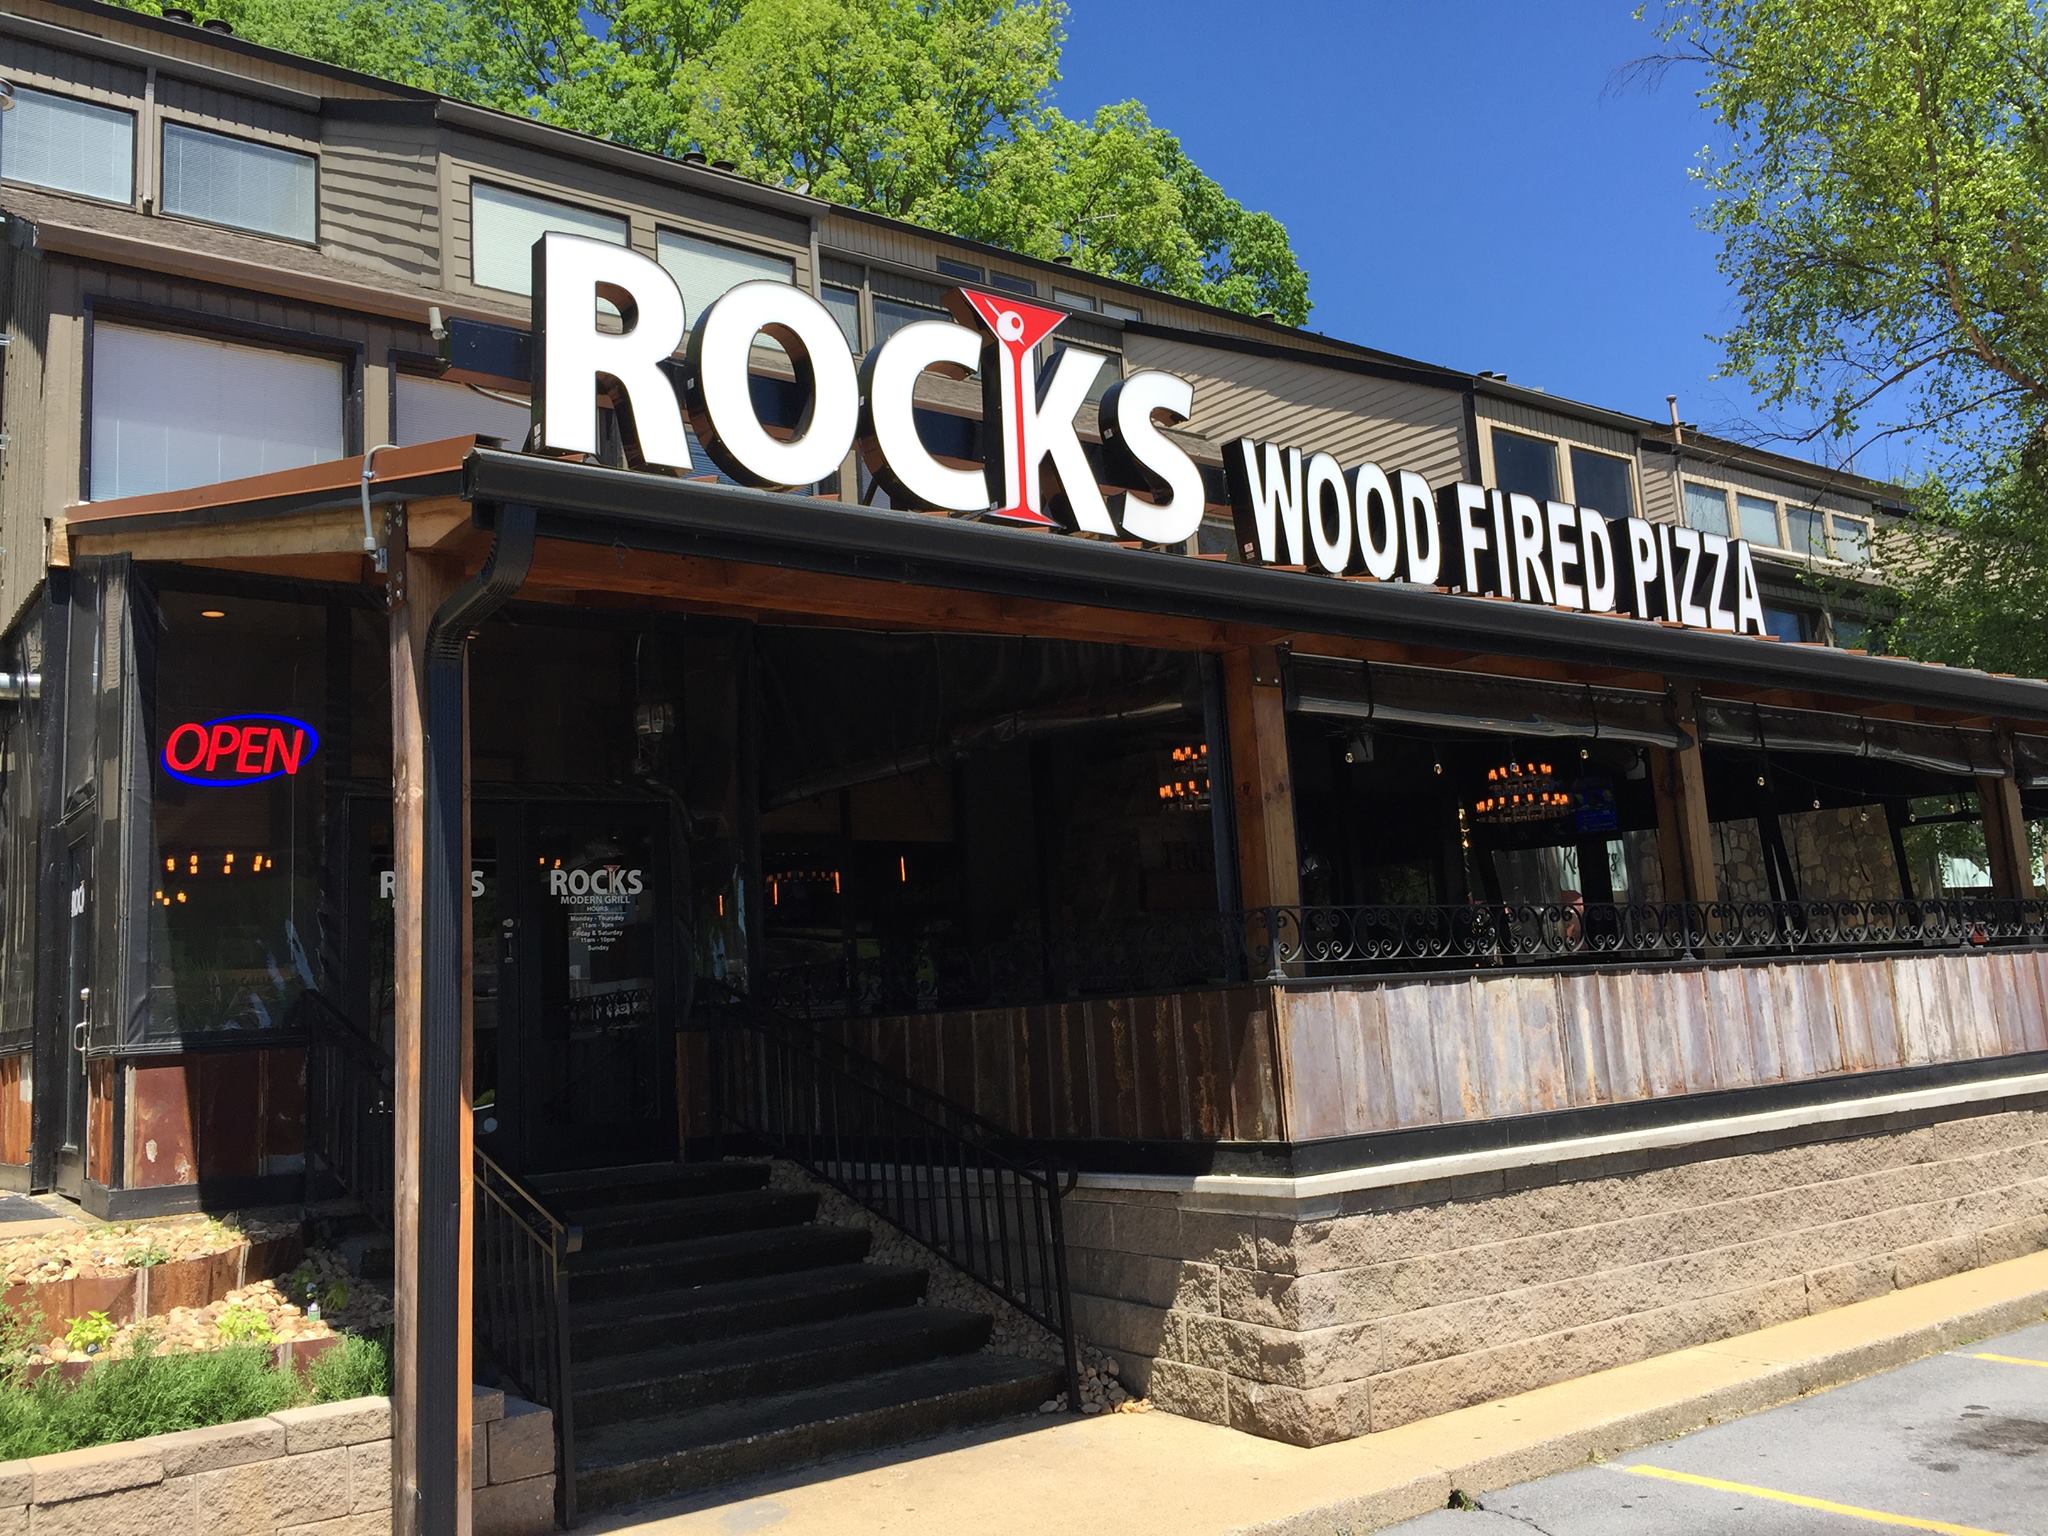 The Rock Wood Fired Pizza - The Rock Wood Fired Pizza